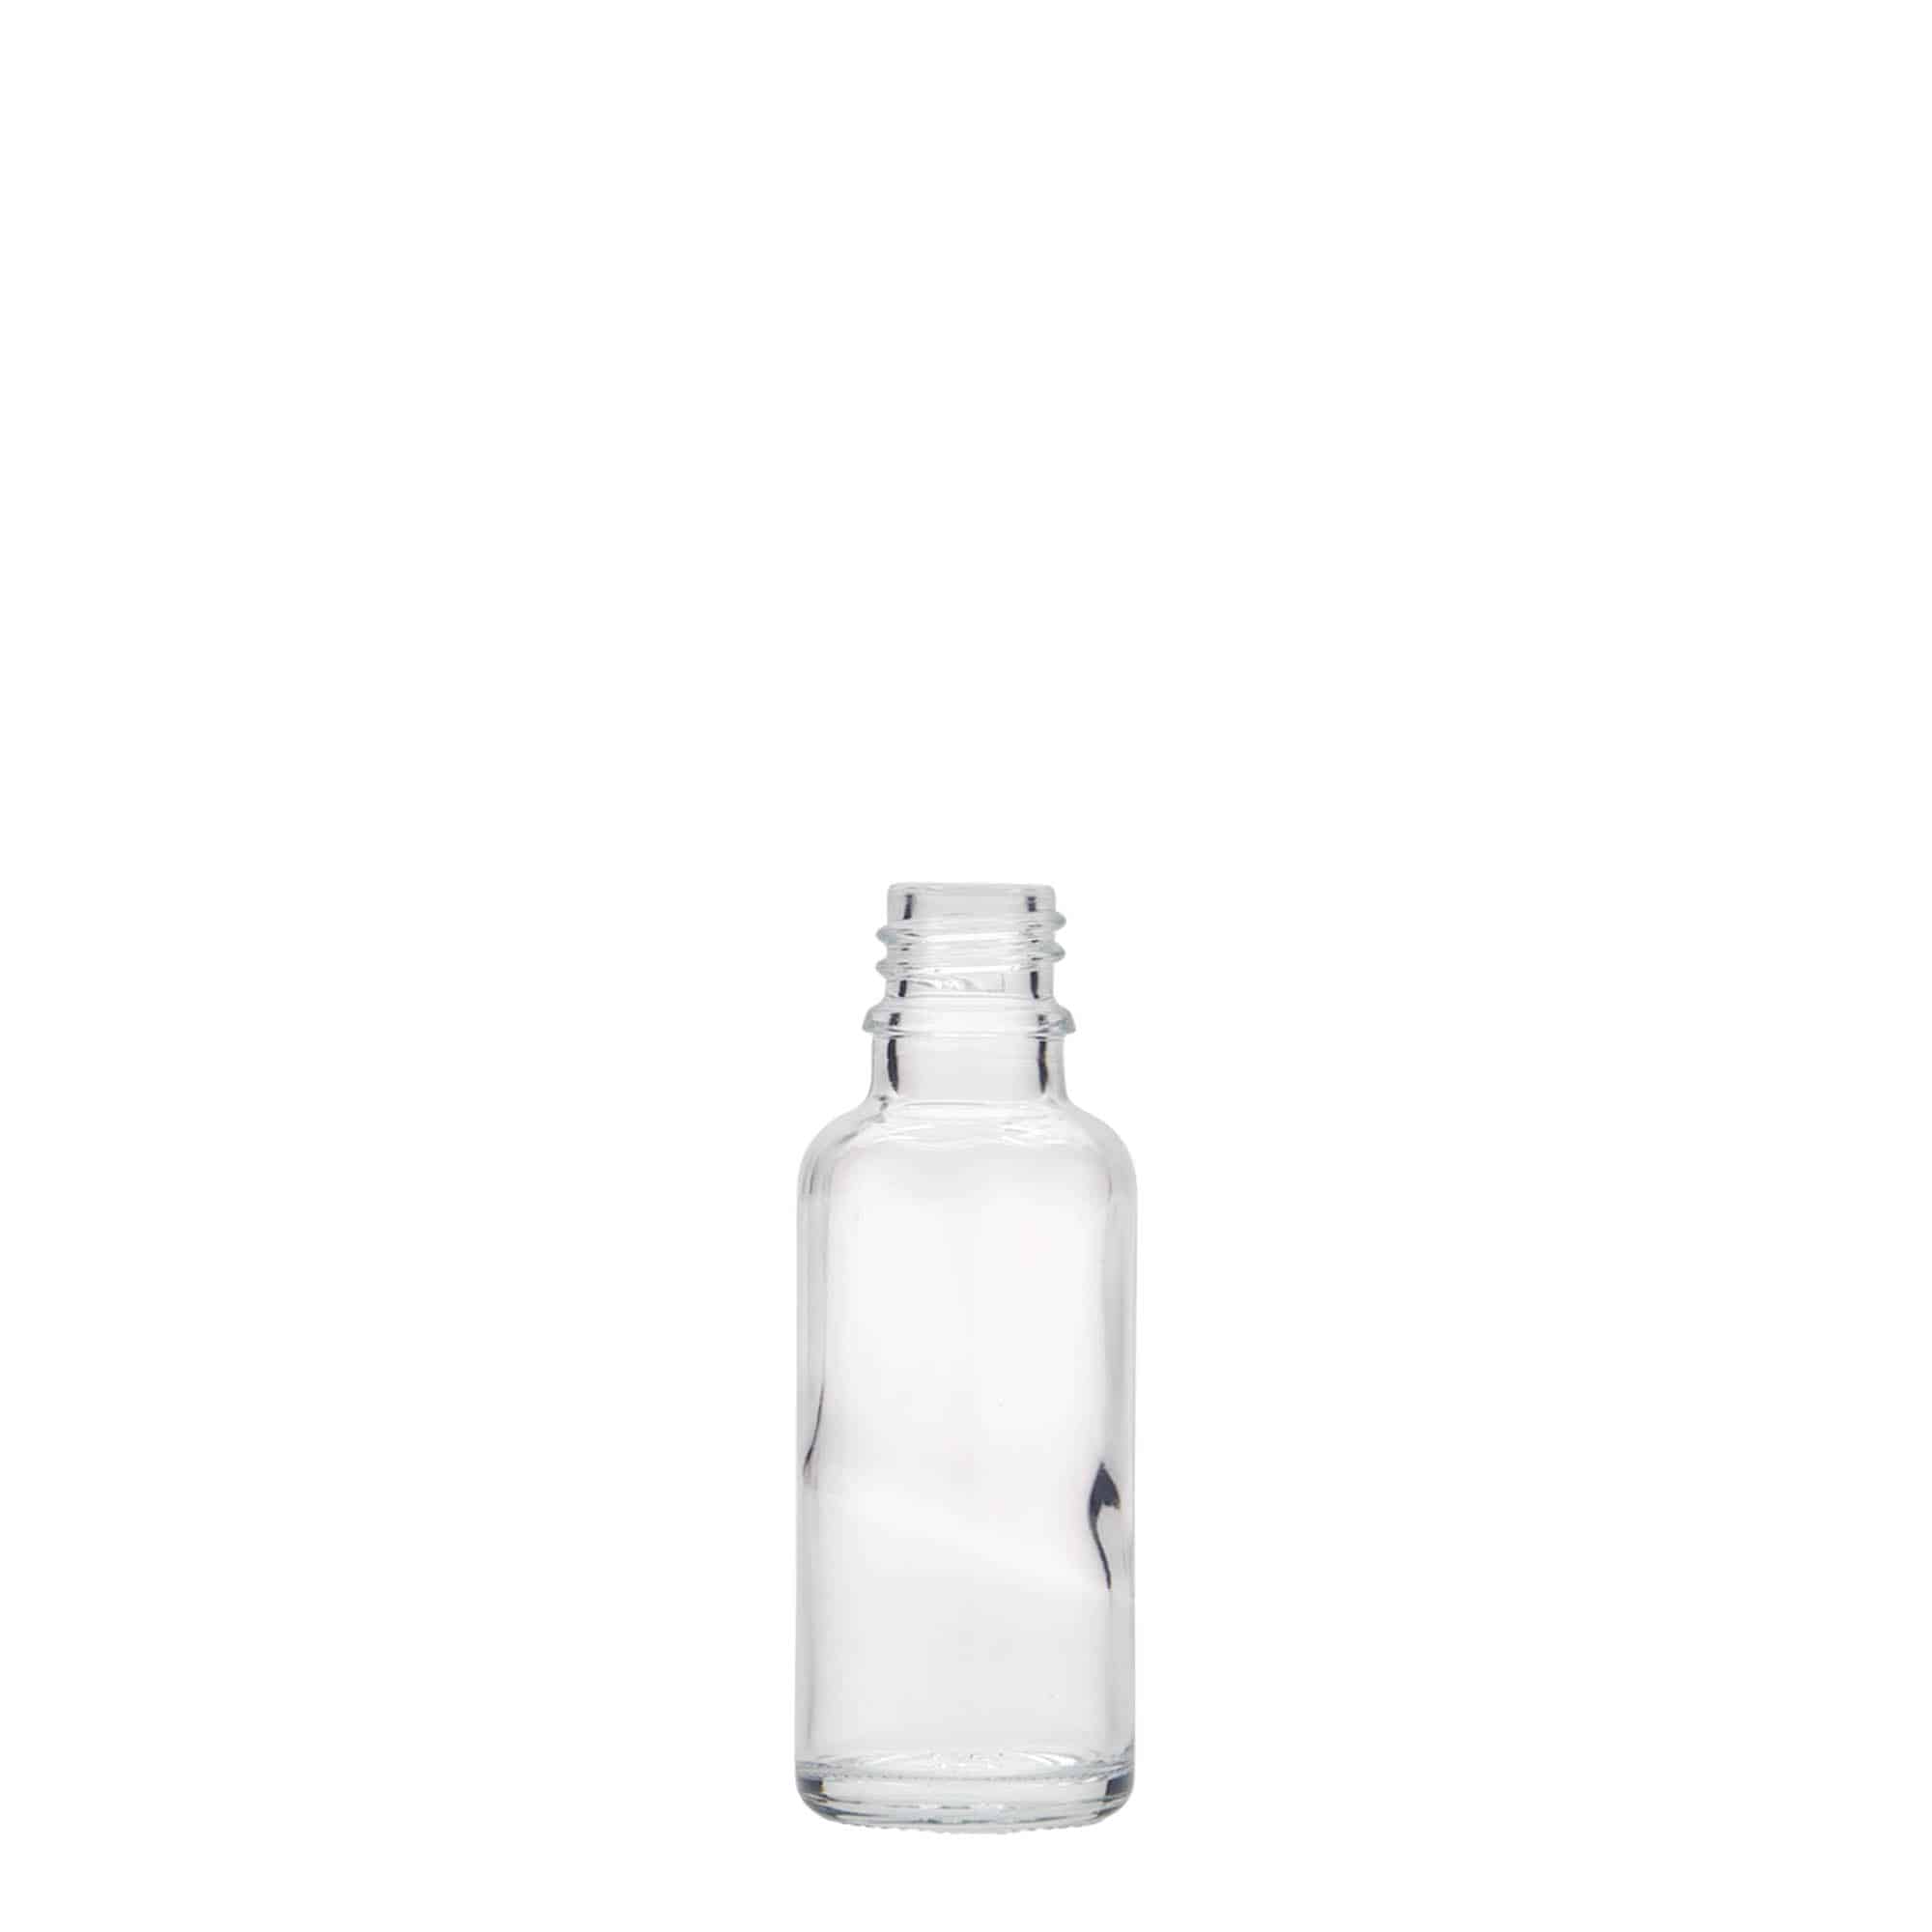 30 ml butelka farmaceutyczna, szkło, zamknięcie: DIN 18